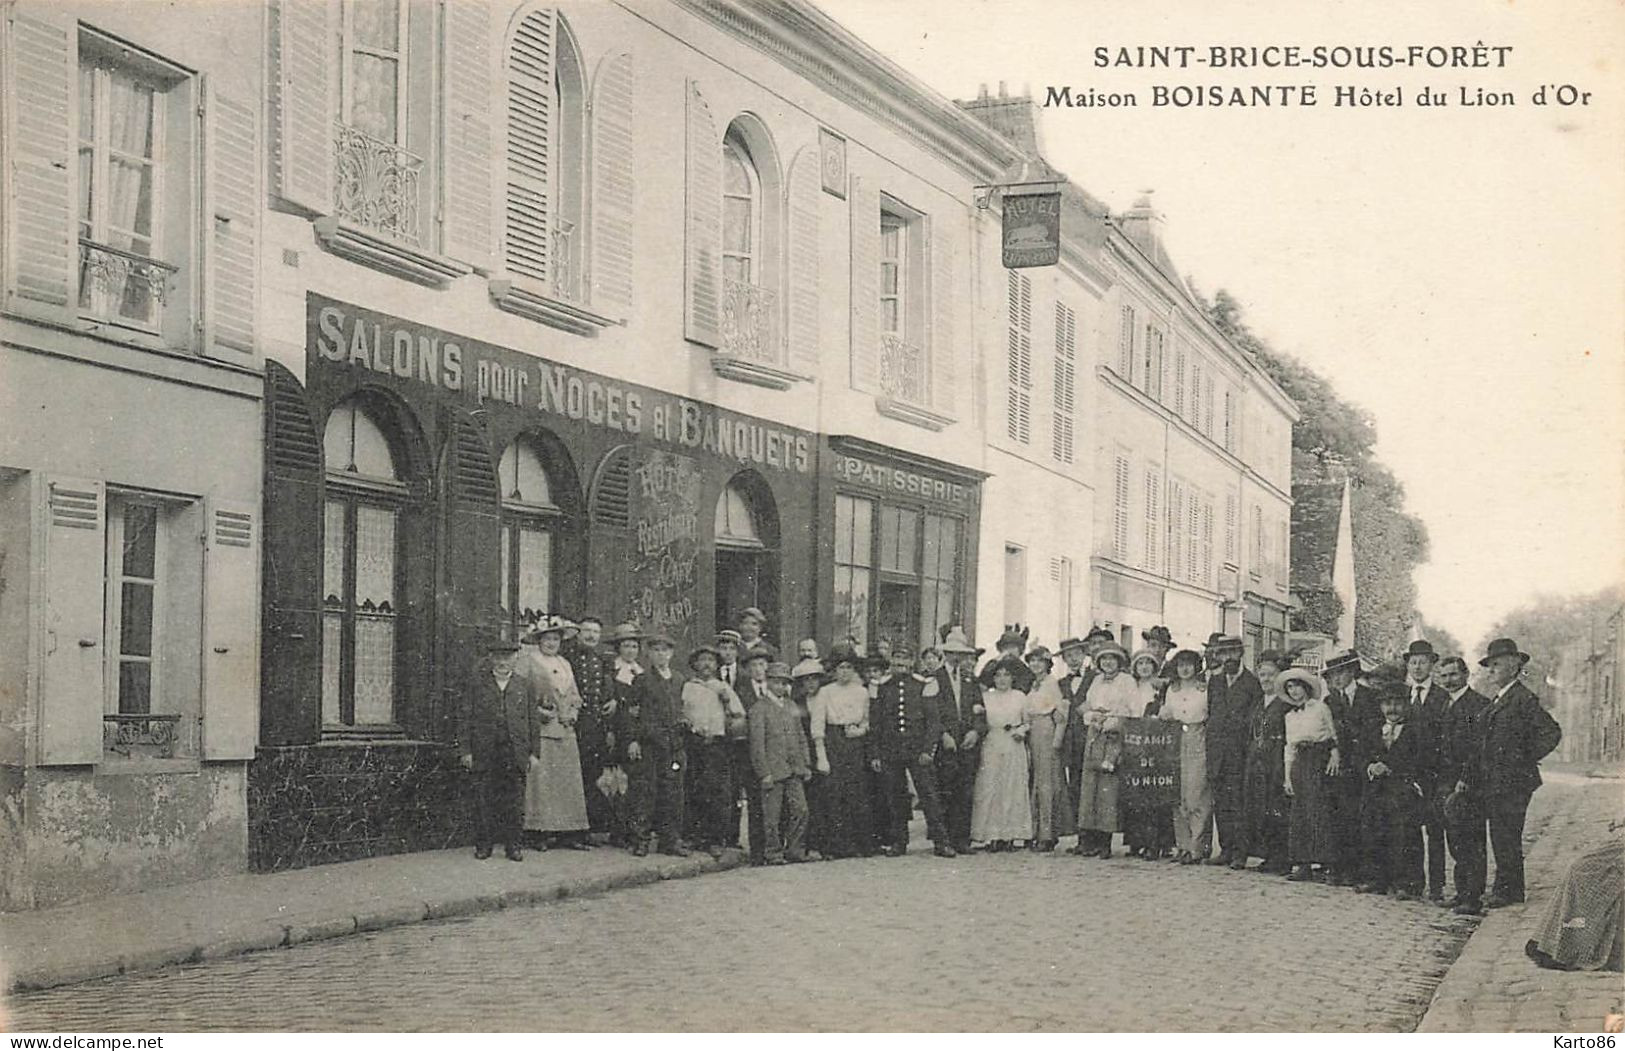 St Brice Sous Forêt * Maison BOISANTE Hôtel Du Lion D'Or * Salons Pour Noces Et Banquets * Pâtisserie - Saint-Brice-sous-Forêt